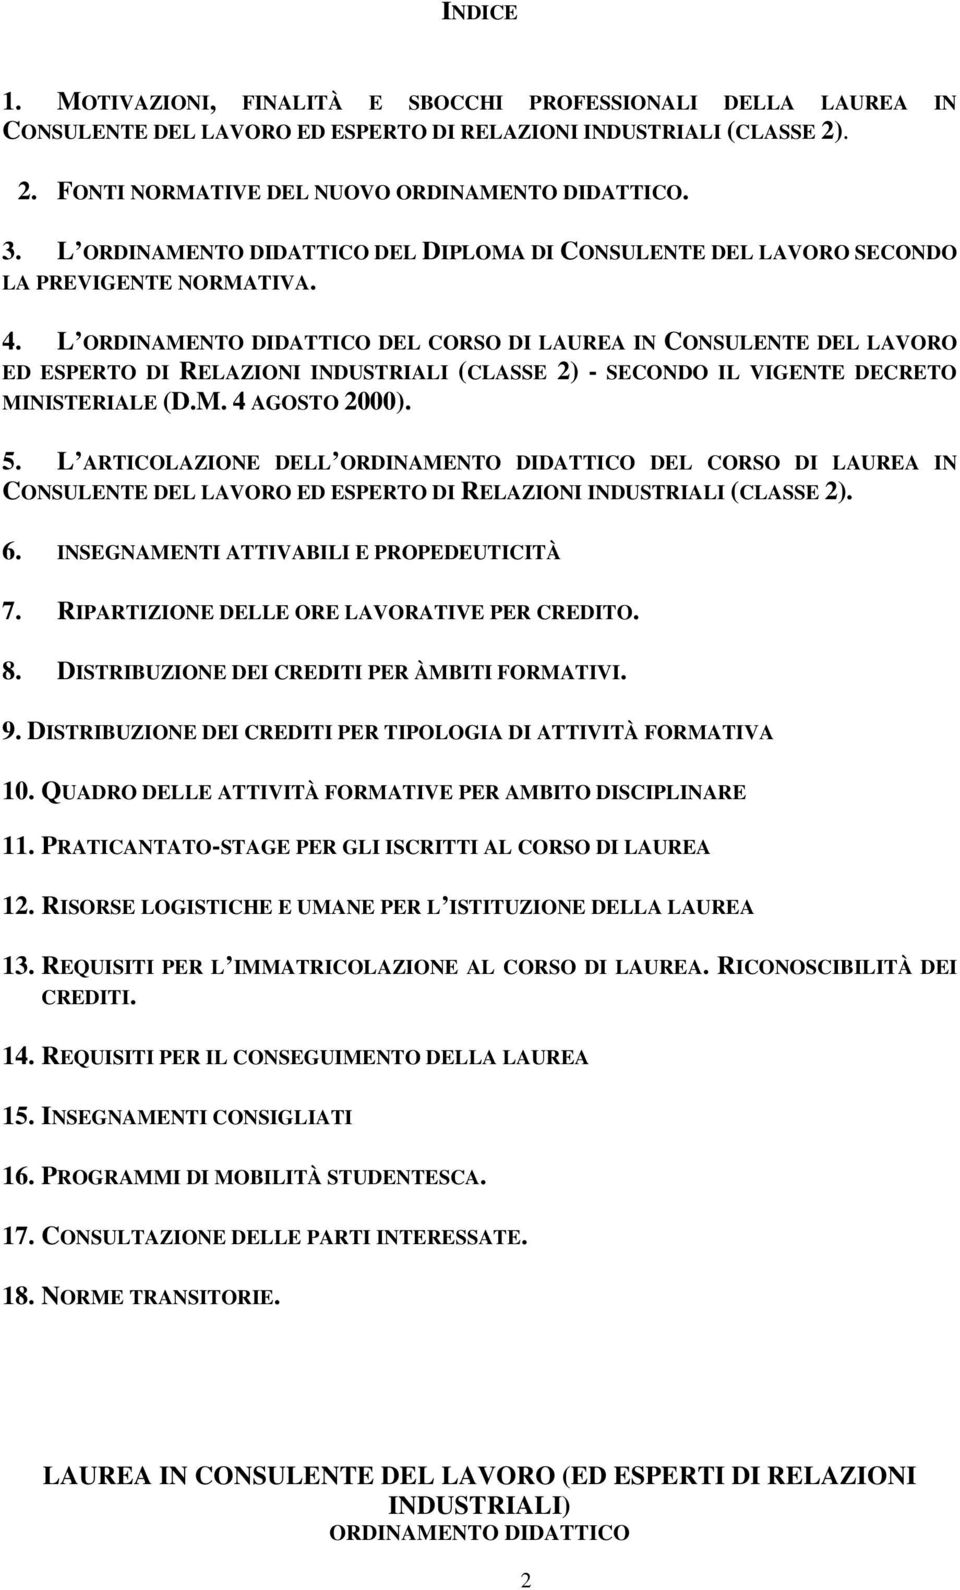 L ORDINAMENTO DIDATTICO DEL CORSO DI LAUREA IN CONSULENTE DEL LAVORO ED ESPERTO DI RELAZIONI INDUSTRIALI (CLASSE 2) - SECONDO IL VIGENTE DECRETO MINISTERIALE (D.M. 4 AGOSTO 2000). 5.